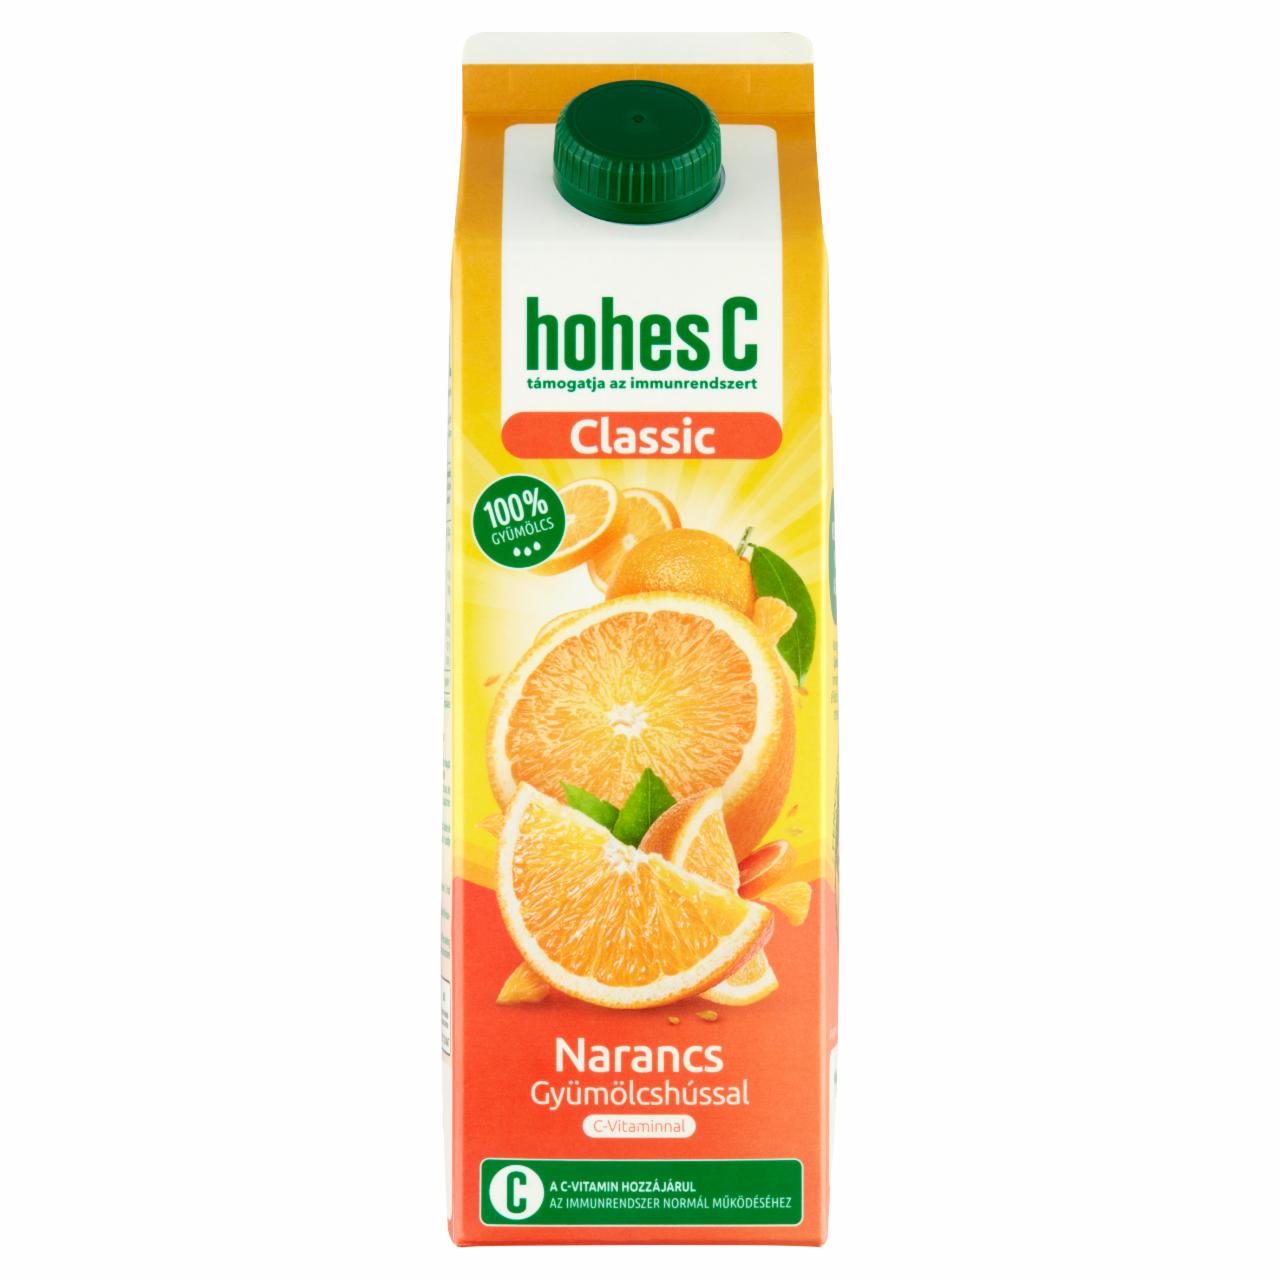 Képek - Hohes C Classic 100% narancslé gyümölcshússal 1 l